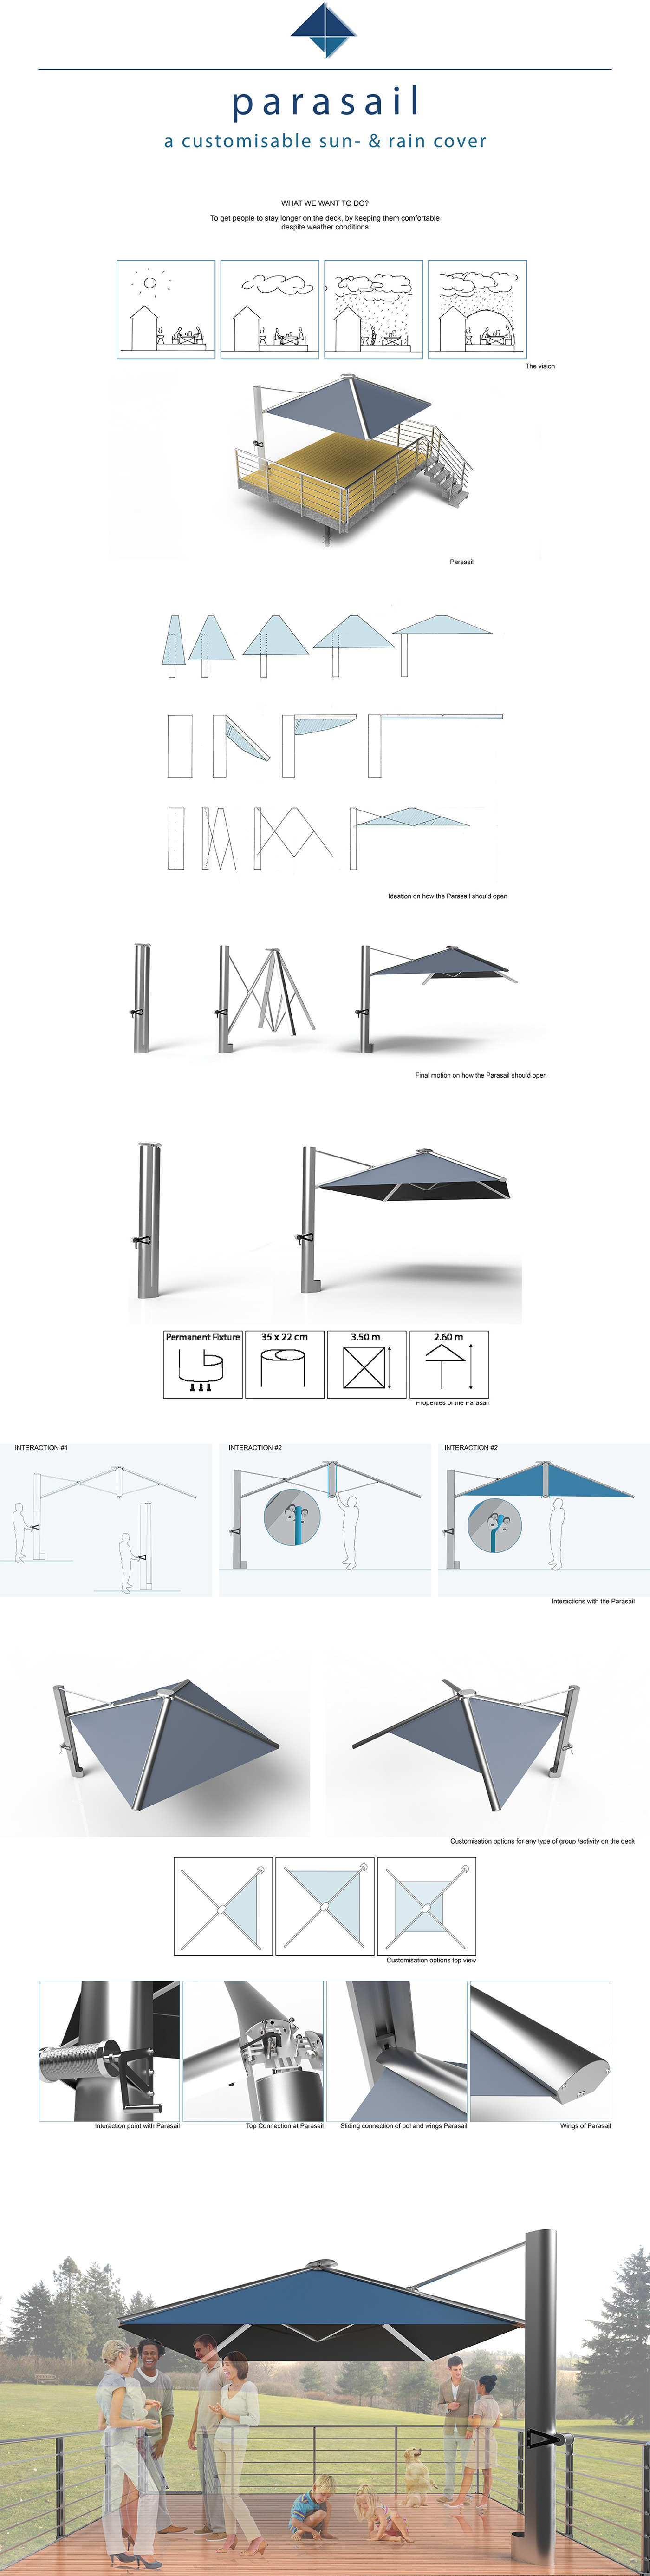 parasail parasol deck furniture aluminiu